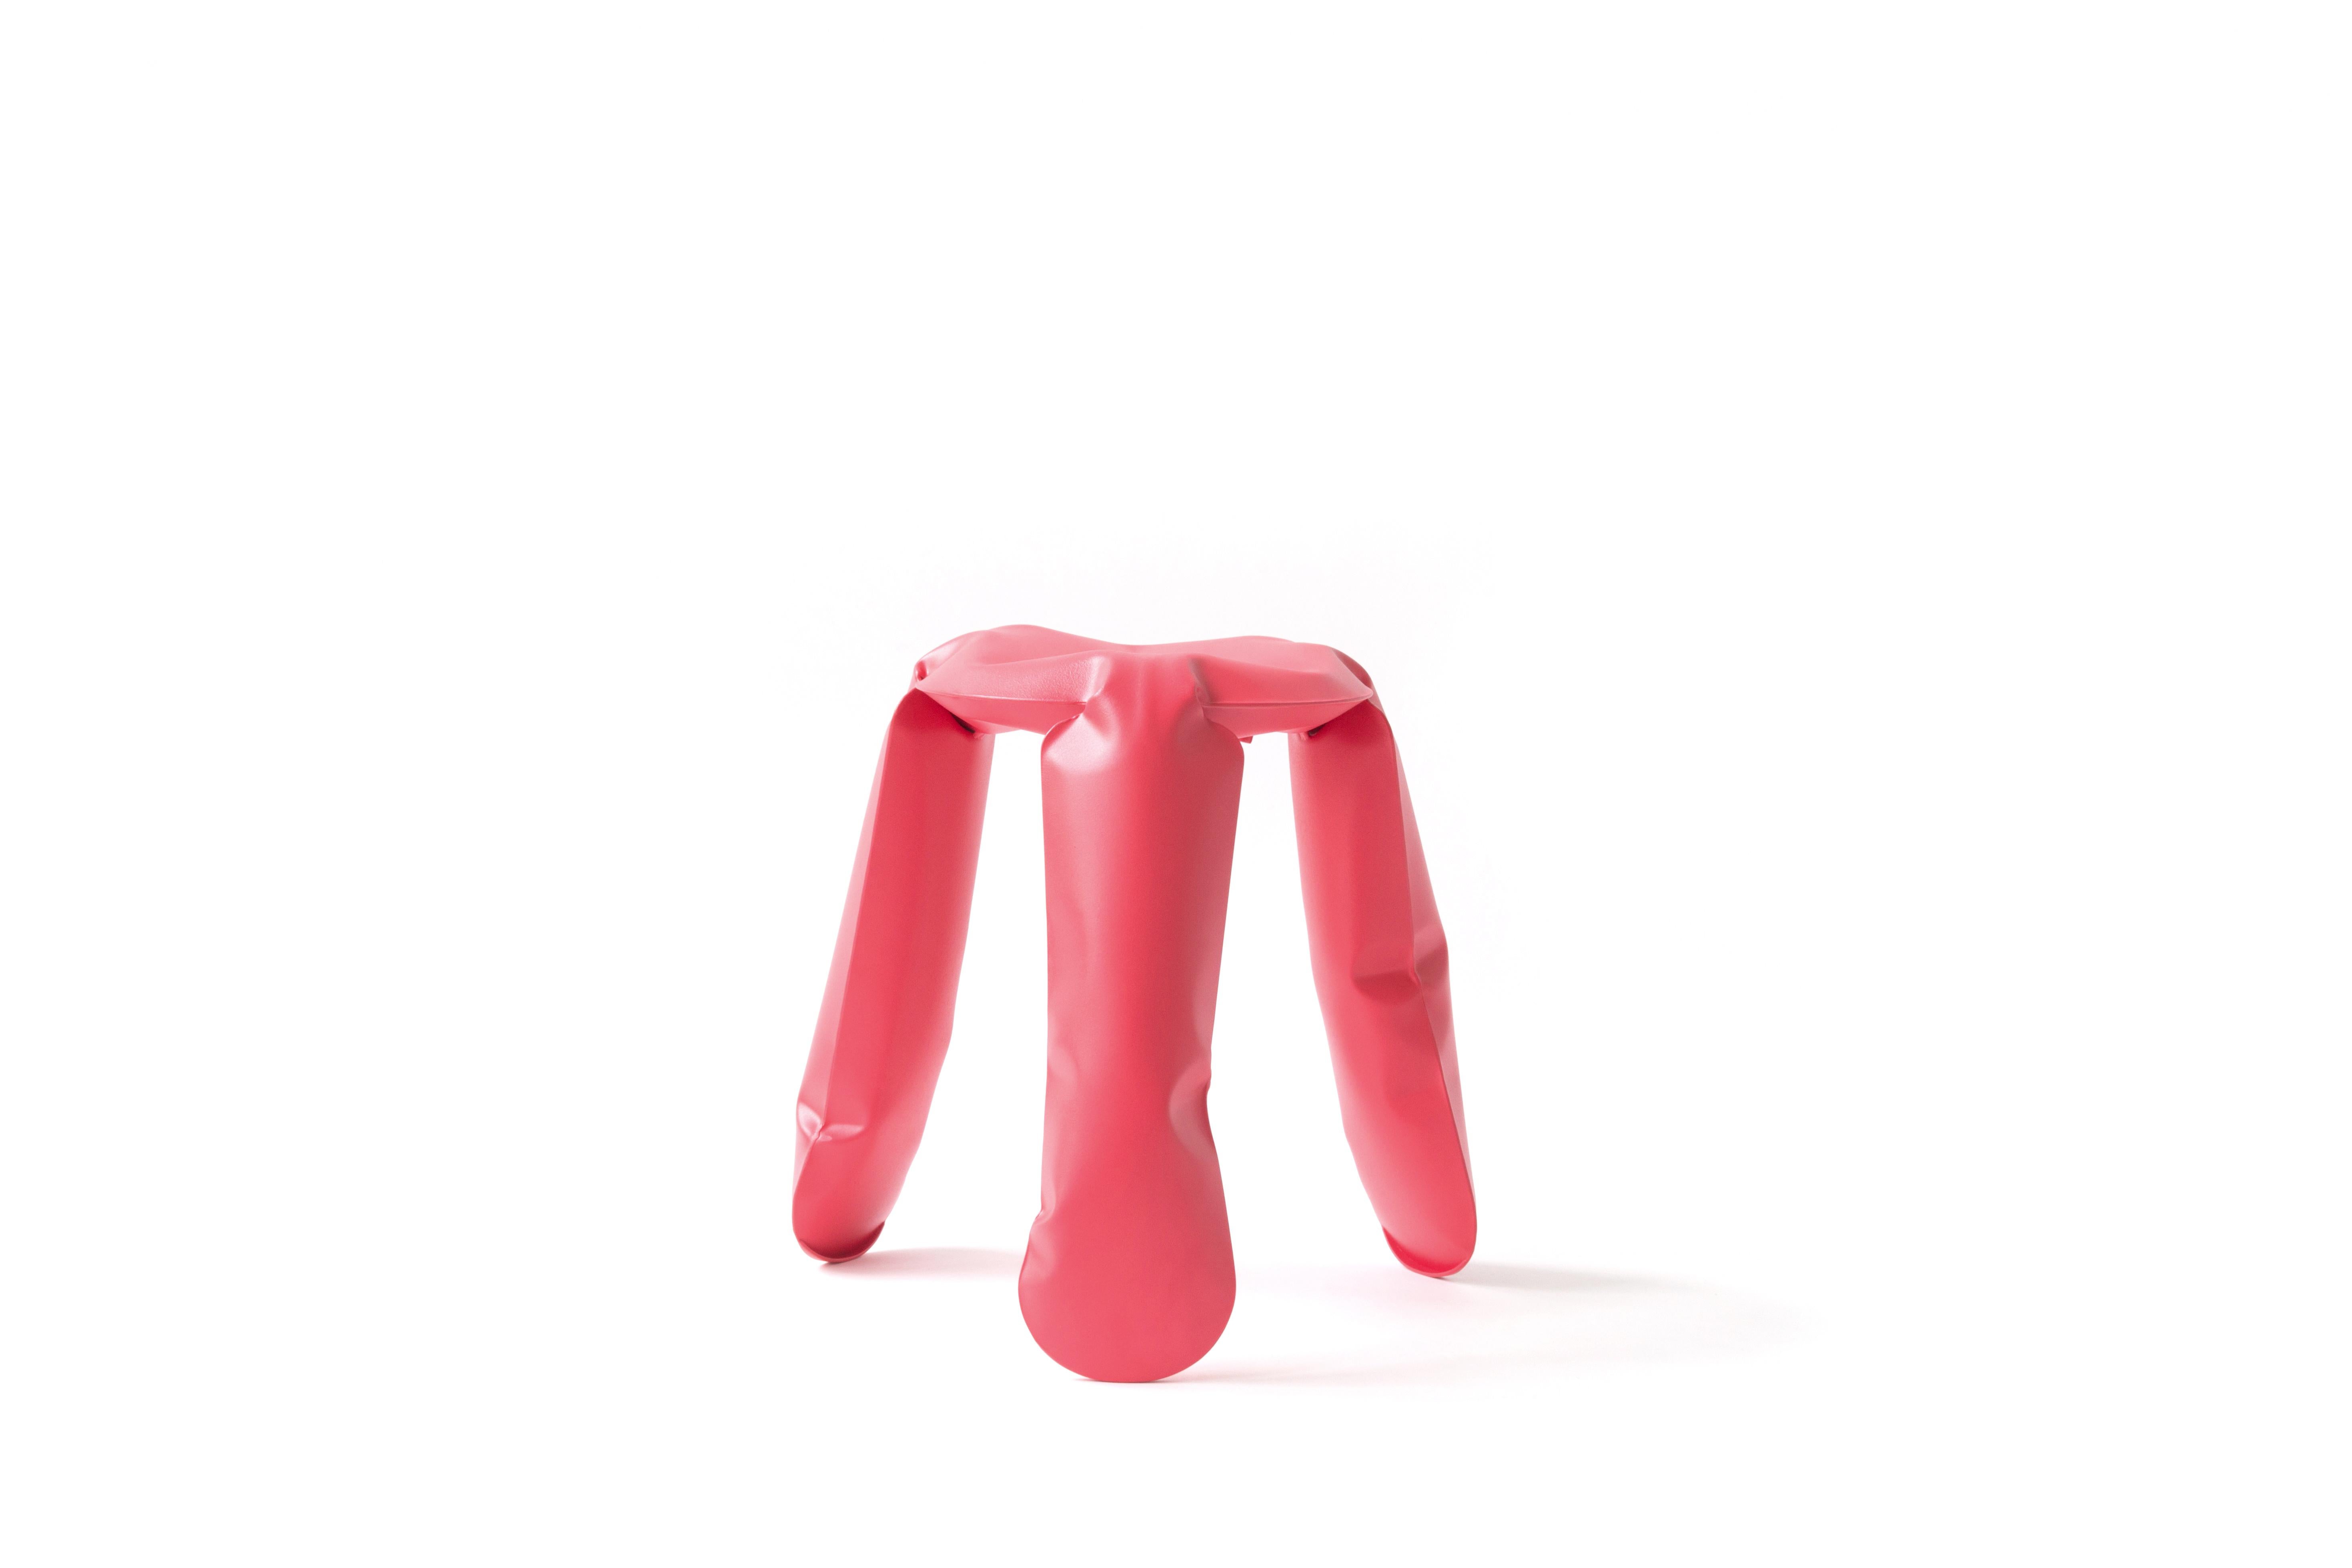 Tabouret Mini Plopp rouge fraise de Zieta
Dimensions : D 25 x H 38 cm 
Matériau : Acier au carbone. 
Finition : Revêtement en poudre.
Disponible en couleurs : Bleu d'eau, Jaune brillant, Or flammé, et Bleu espace profond. Disponible en acier